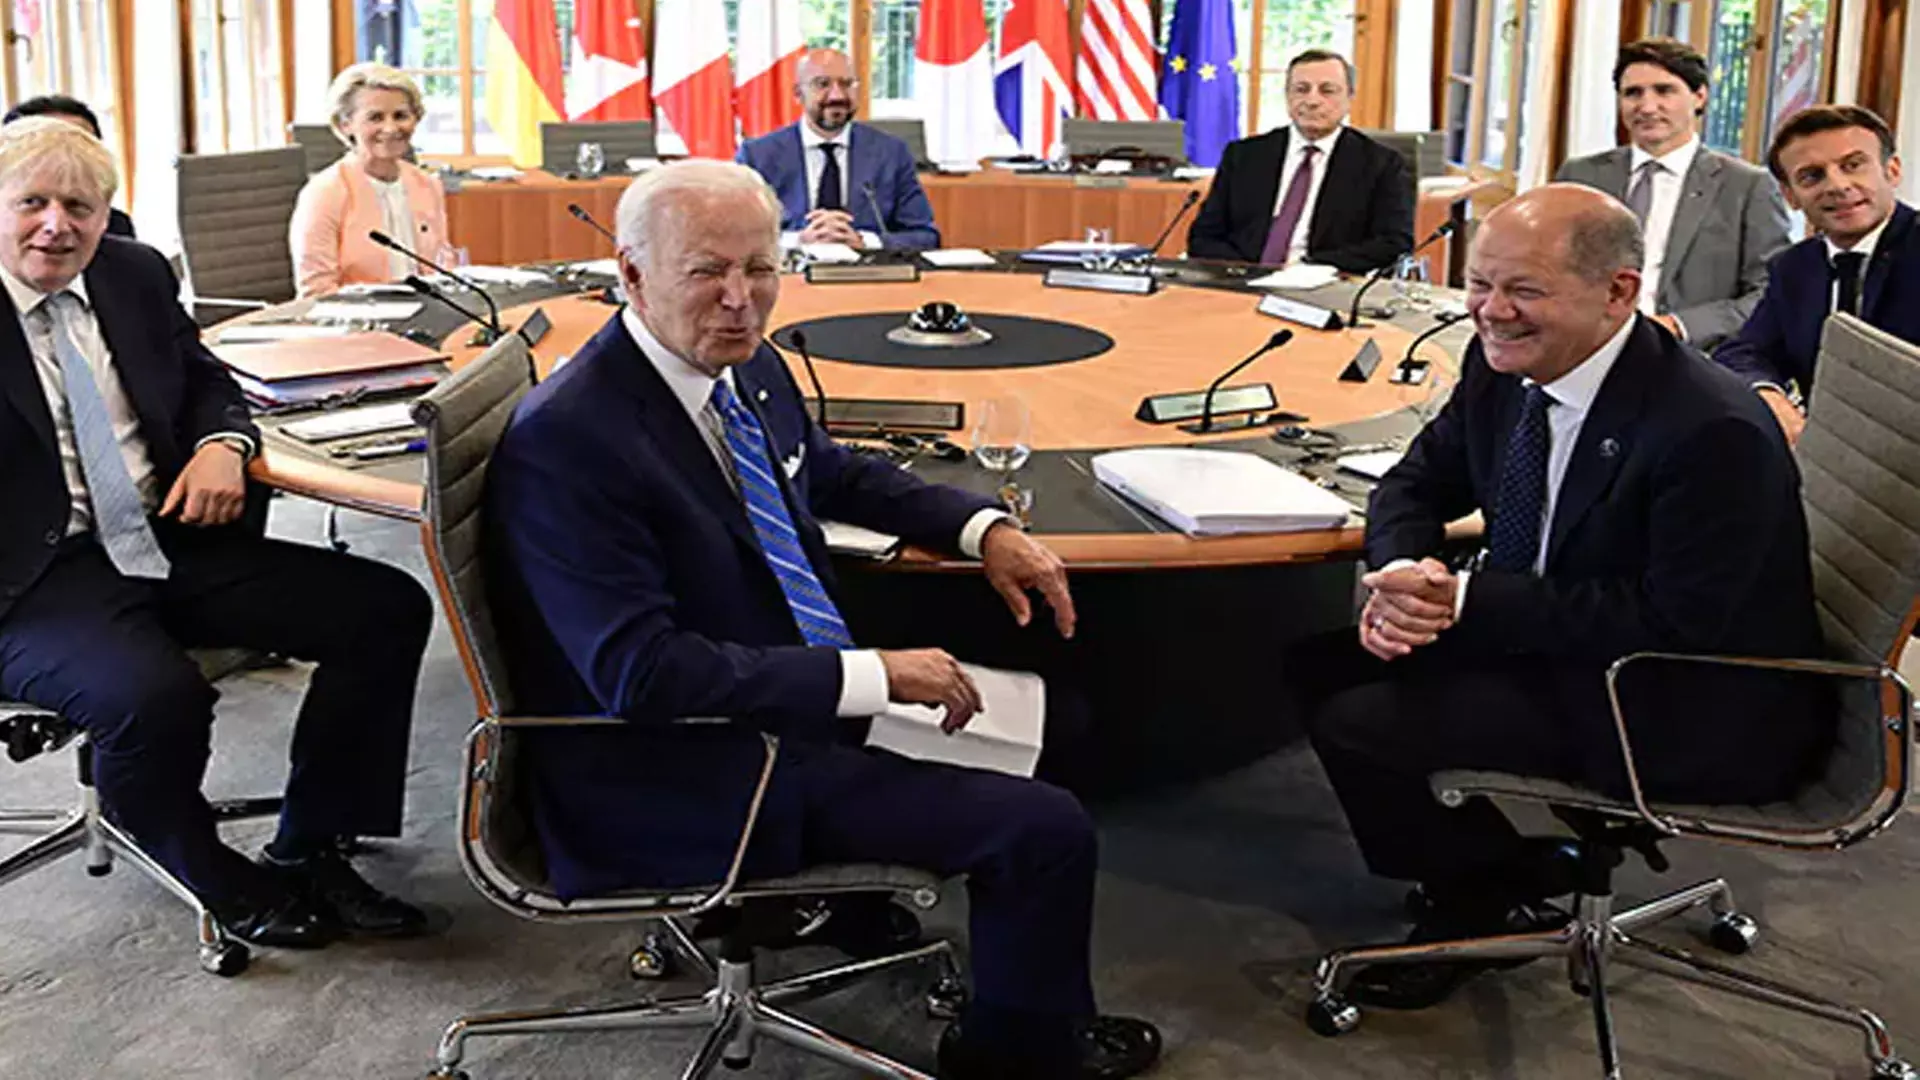 Washington: जी-7 के सम्मेलन के दौरान अमेरिका ने रूस पर प्रतिबंधों का दायरा बढ़ाया